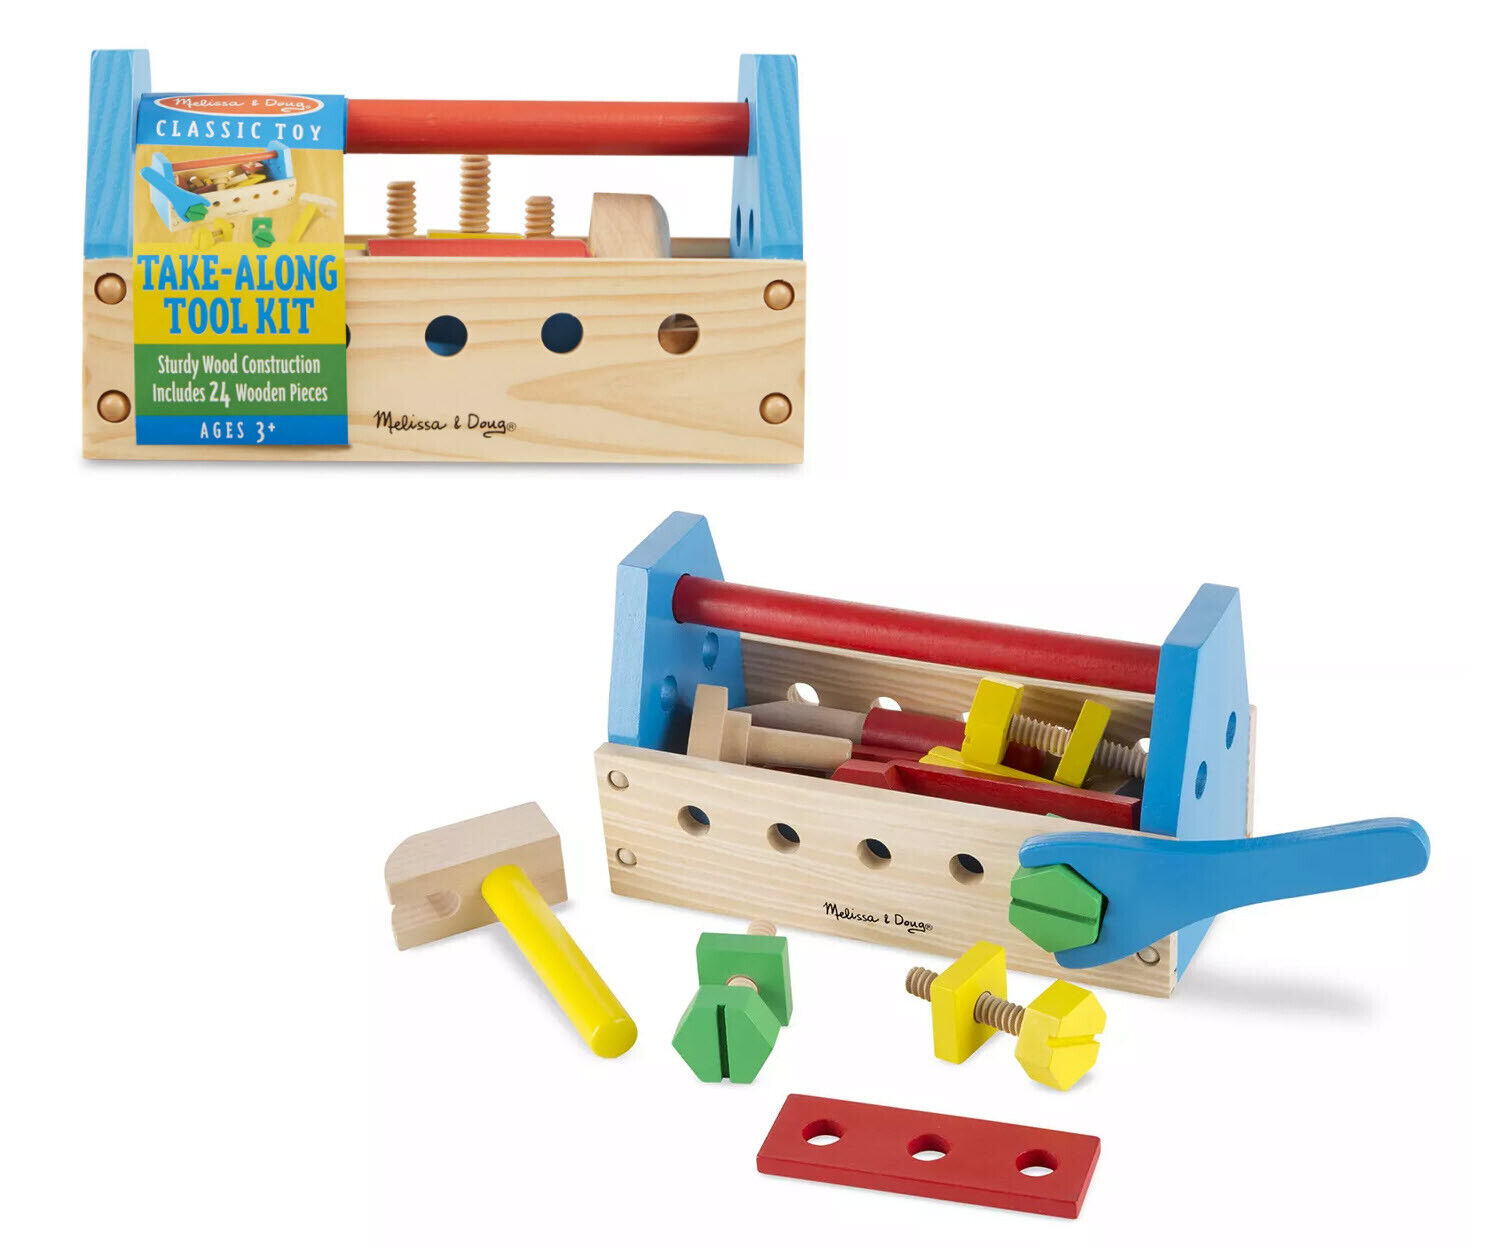 Take-Along Tool Kit Wooden Toy